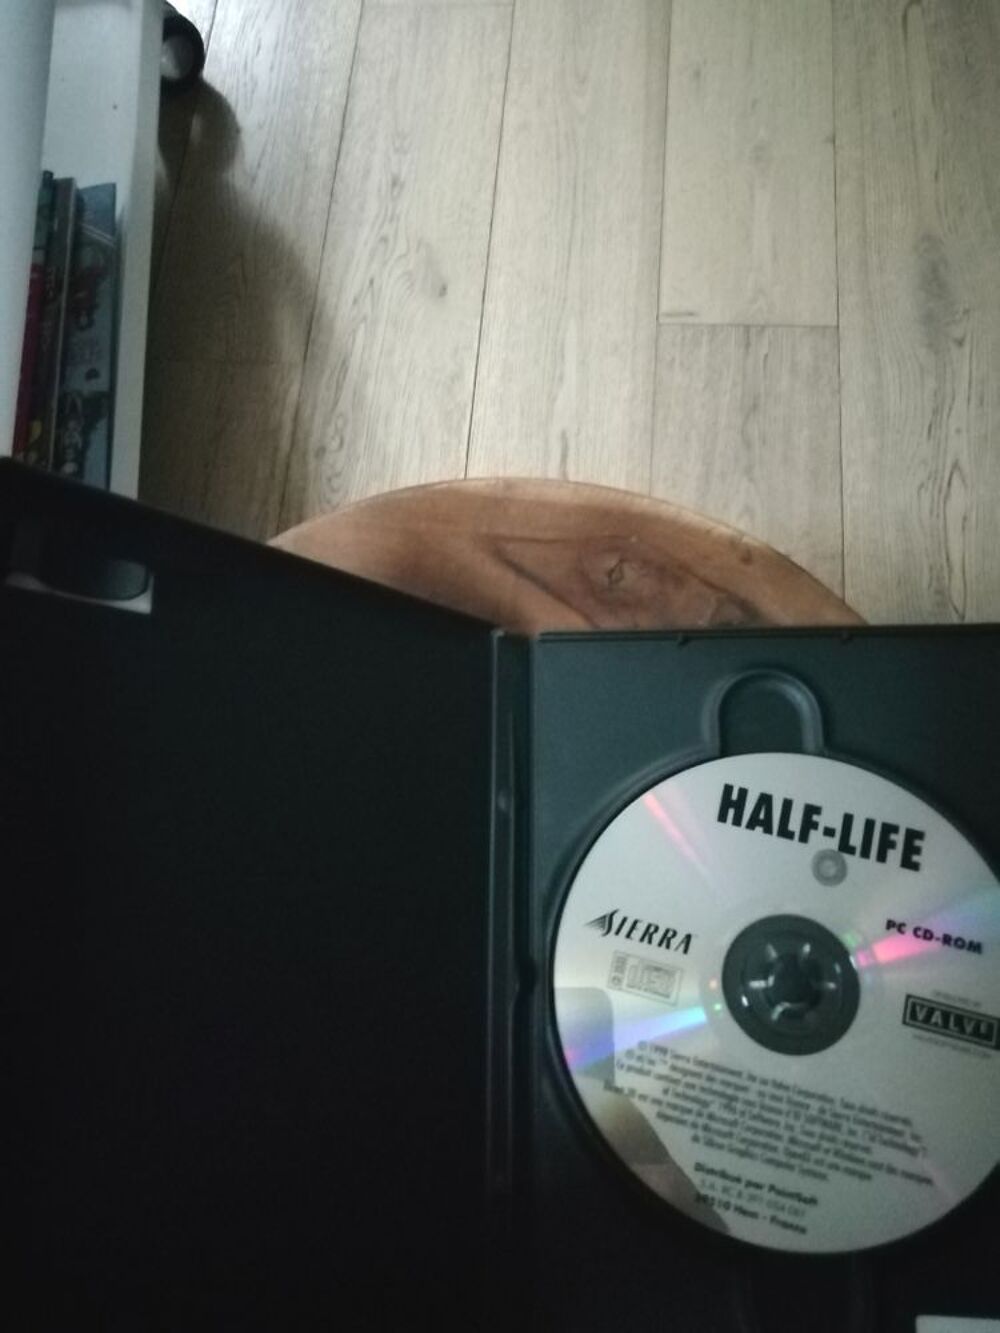 Half-Life PC FR Consoles et jeux vidos